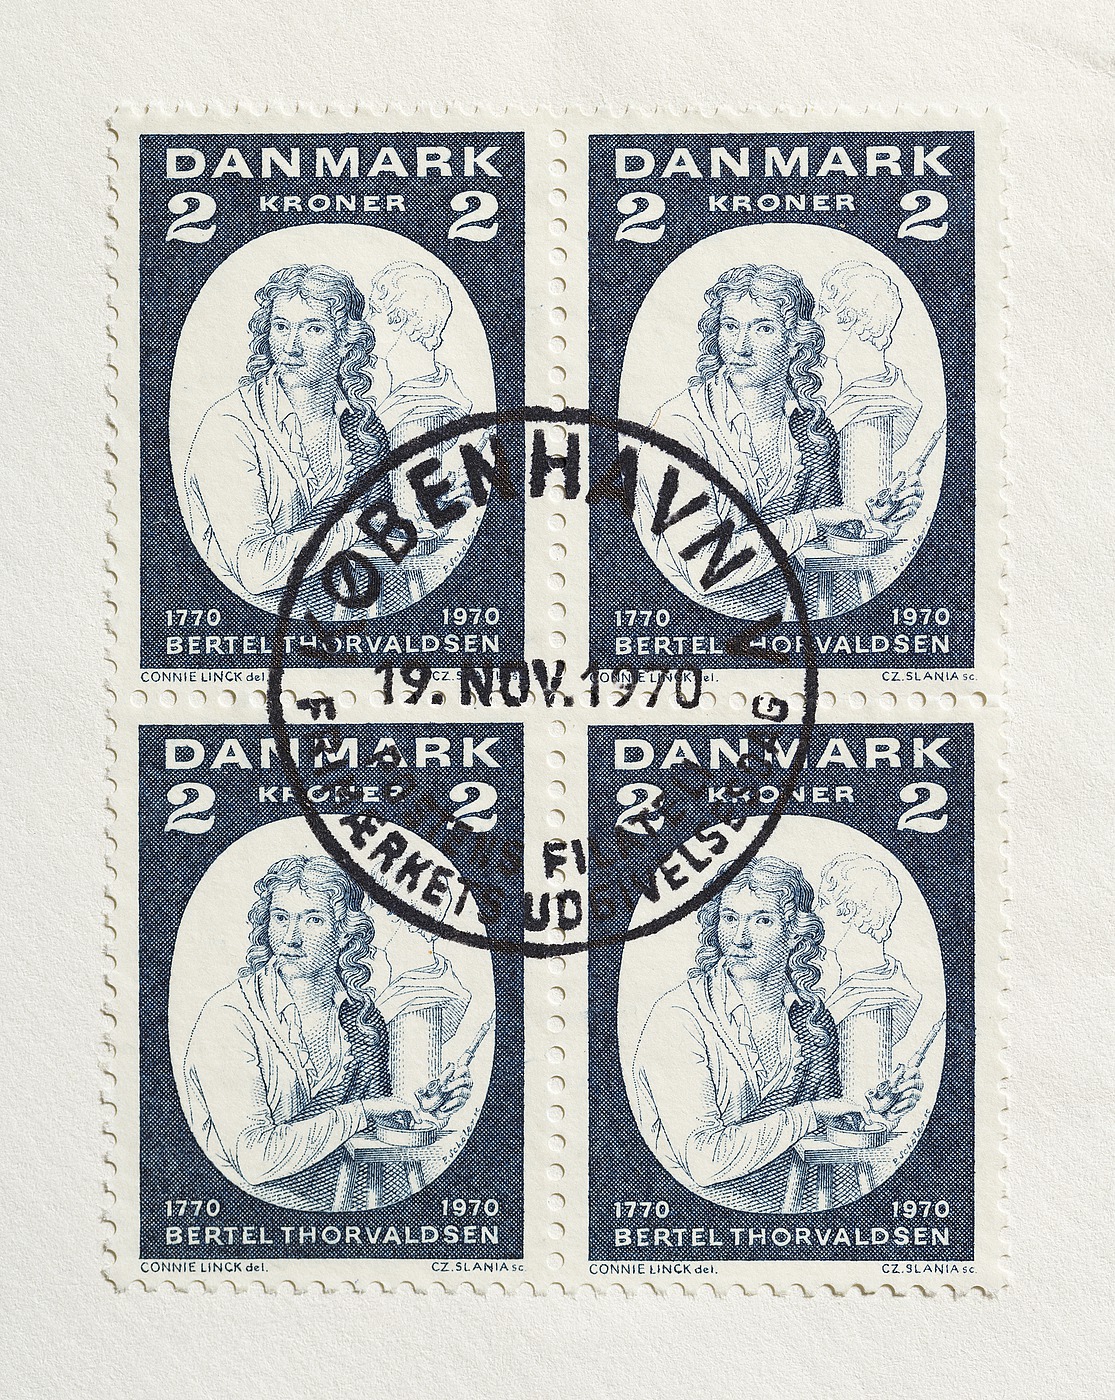 Førstedagskuvert med en firblok af Thorvaldsen-frimærket udgivet på billedhuggerens 200-års fødselsdag, 19.11.1970